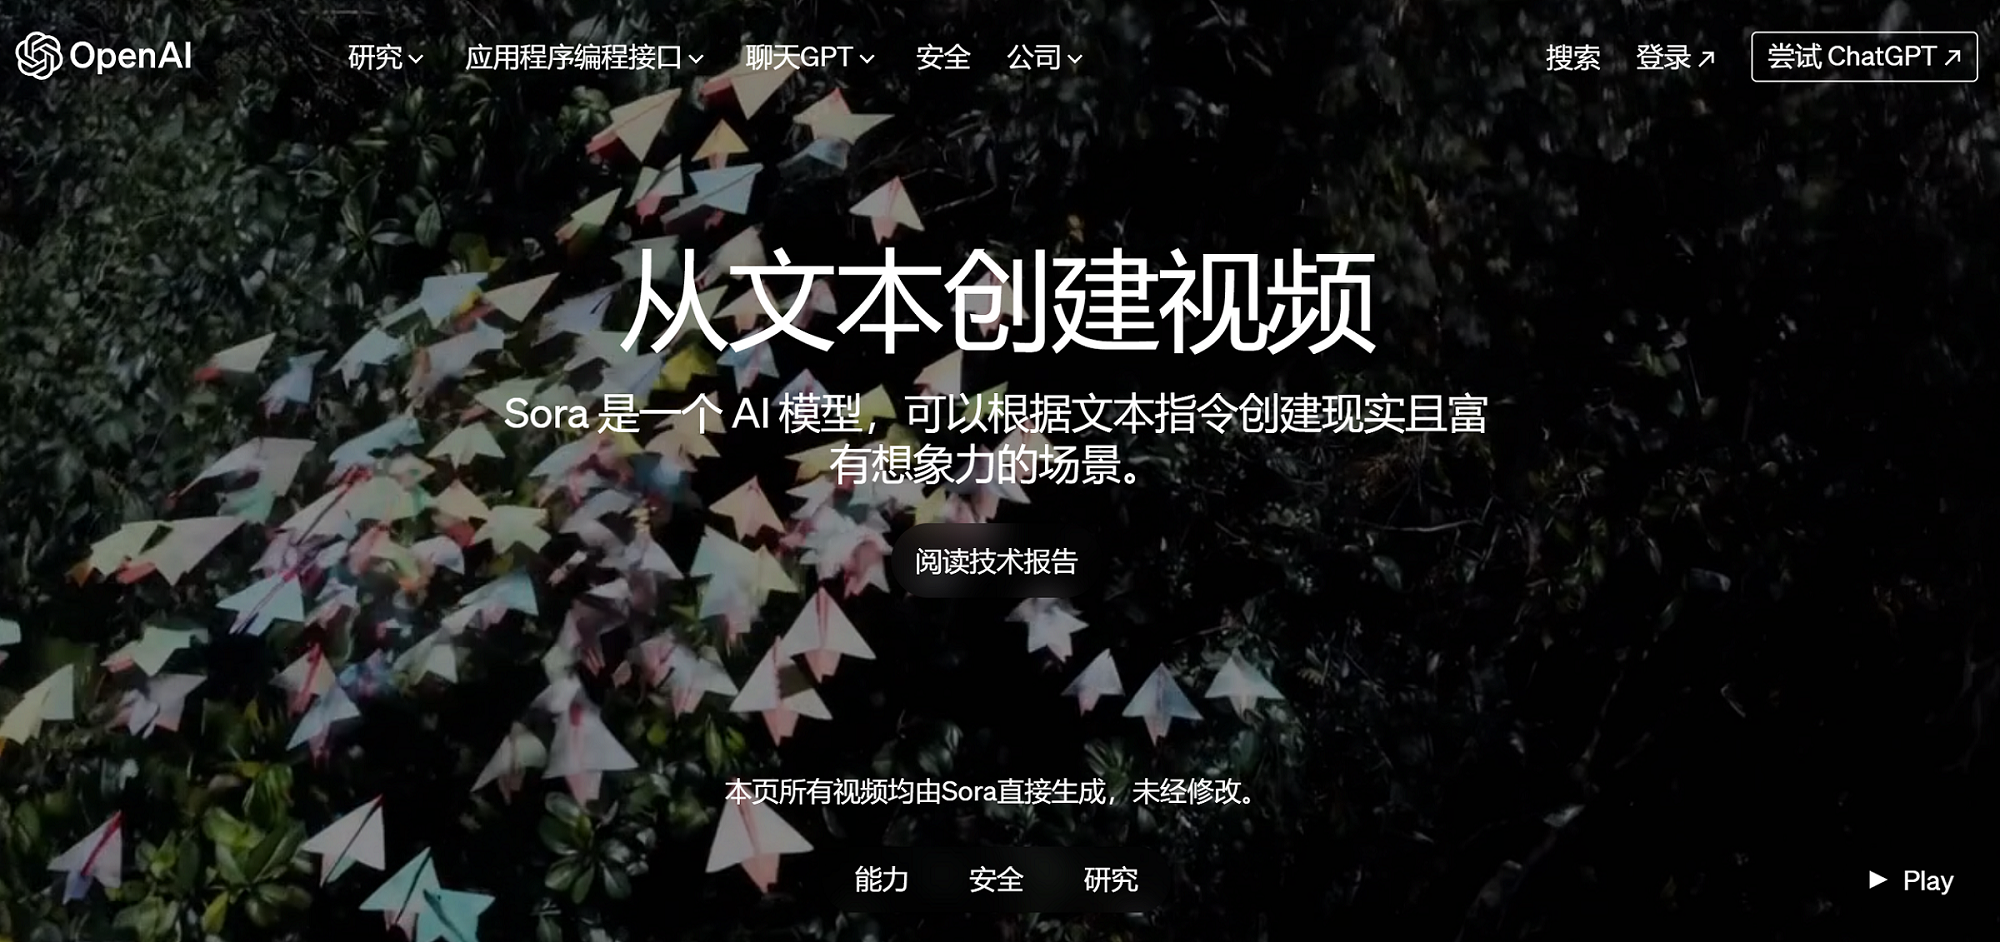 全球顶尖的文生短视频大模型Sora的高质量全中文版技术报告，深度解读，还可下载SoraAI生成的高清原版视频